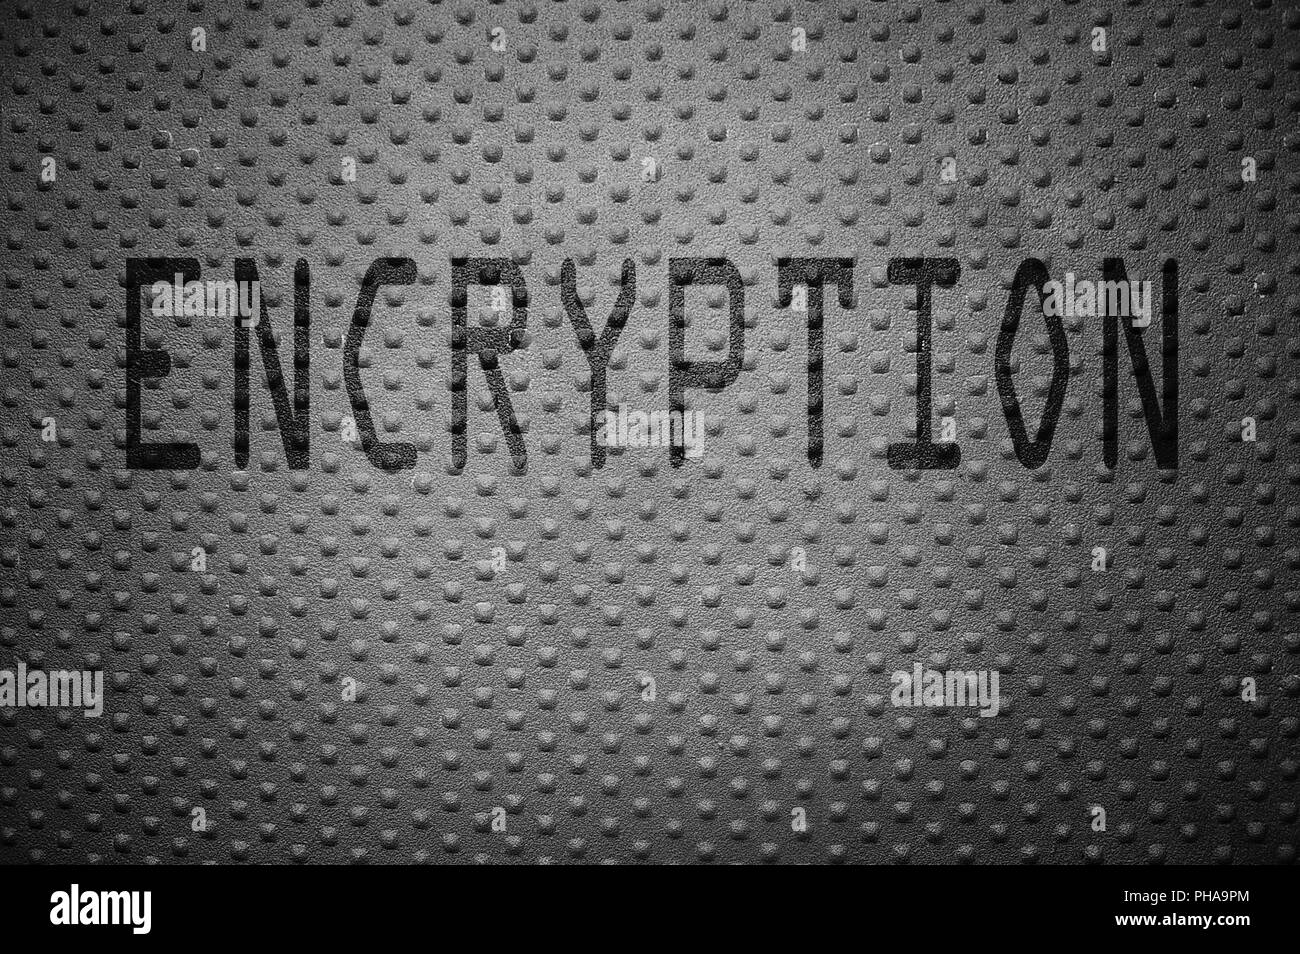 Data encryption Stock Photo